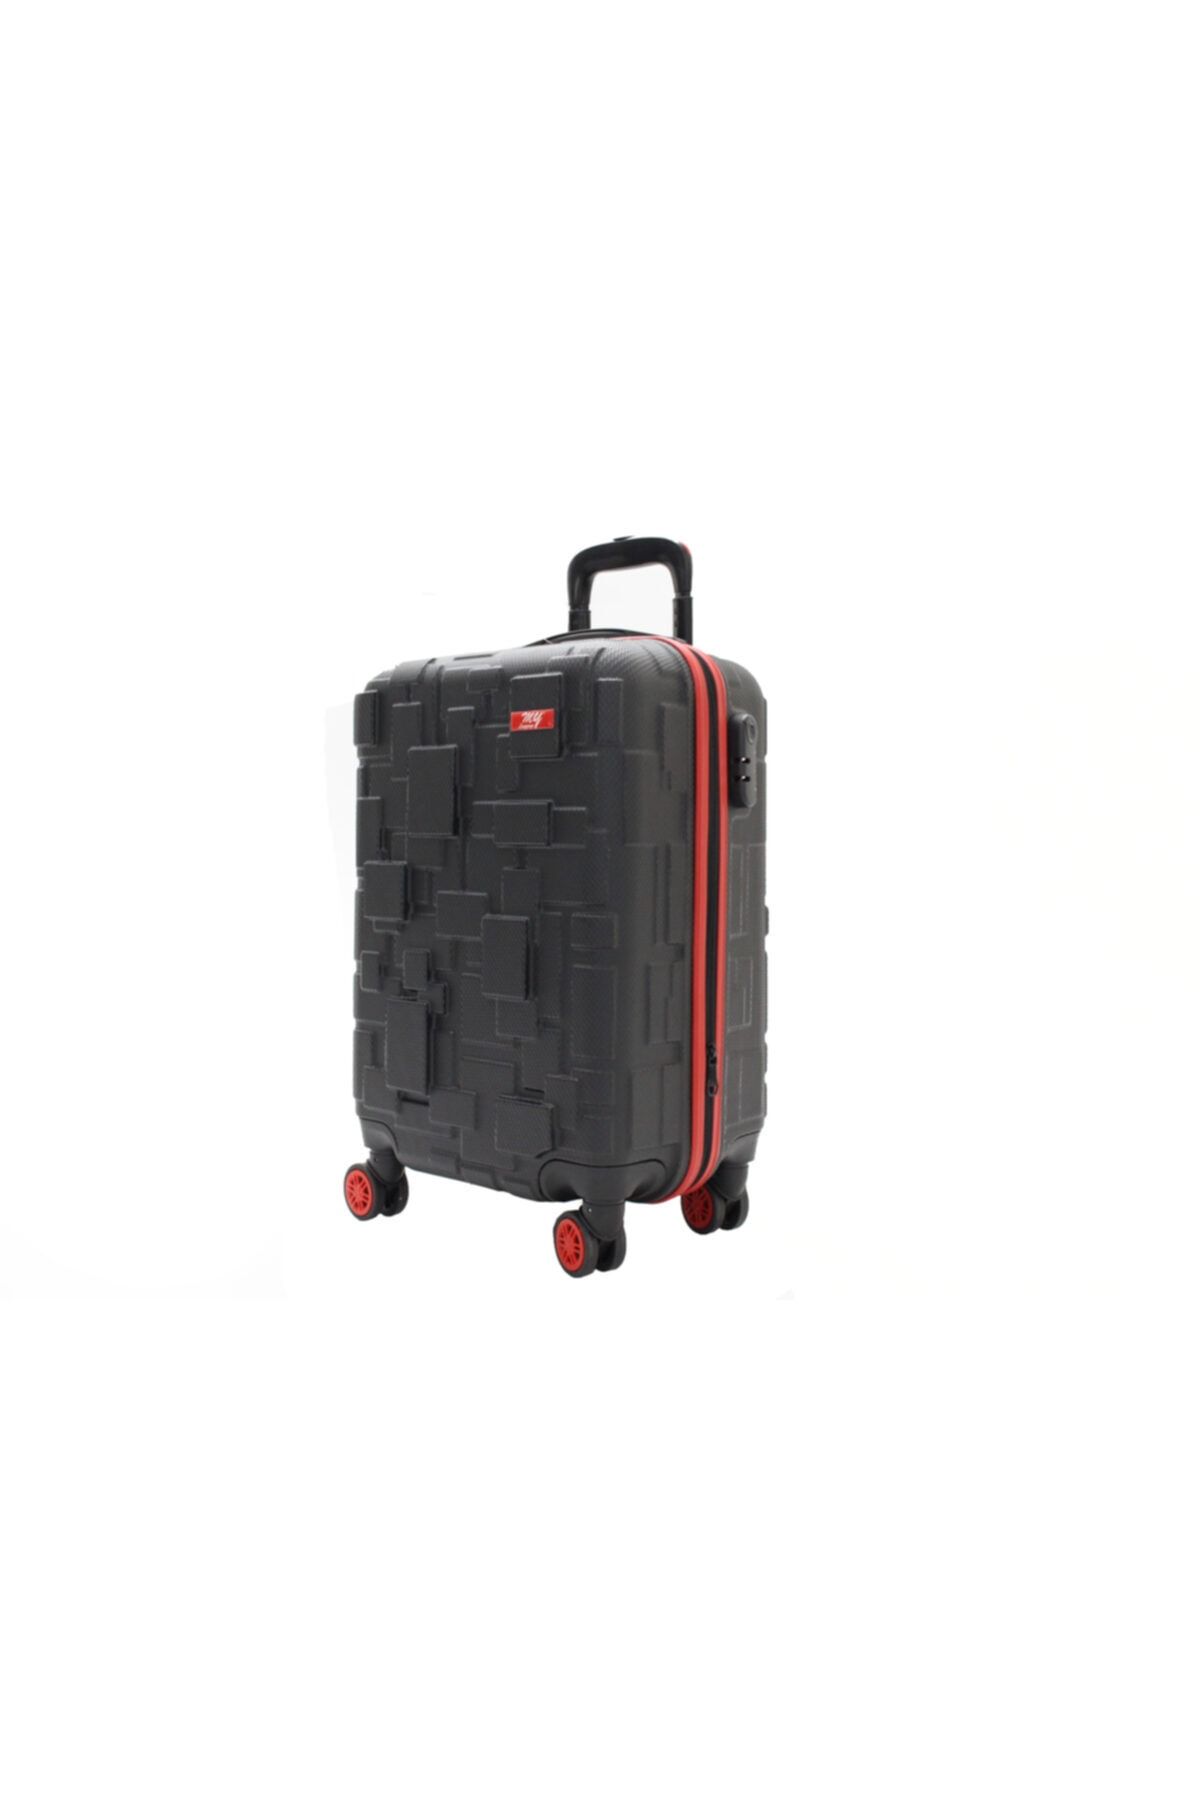 MY SARACİYE My Luggage Valiz 10136-3 Bakalit Kabin Boy Valiz, Bavul